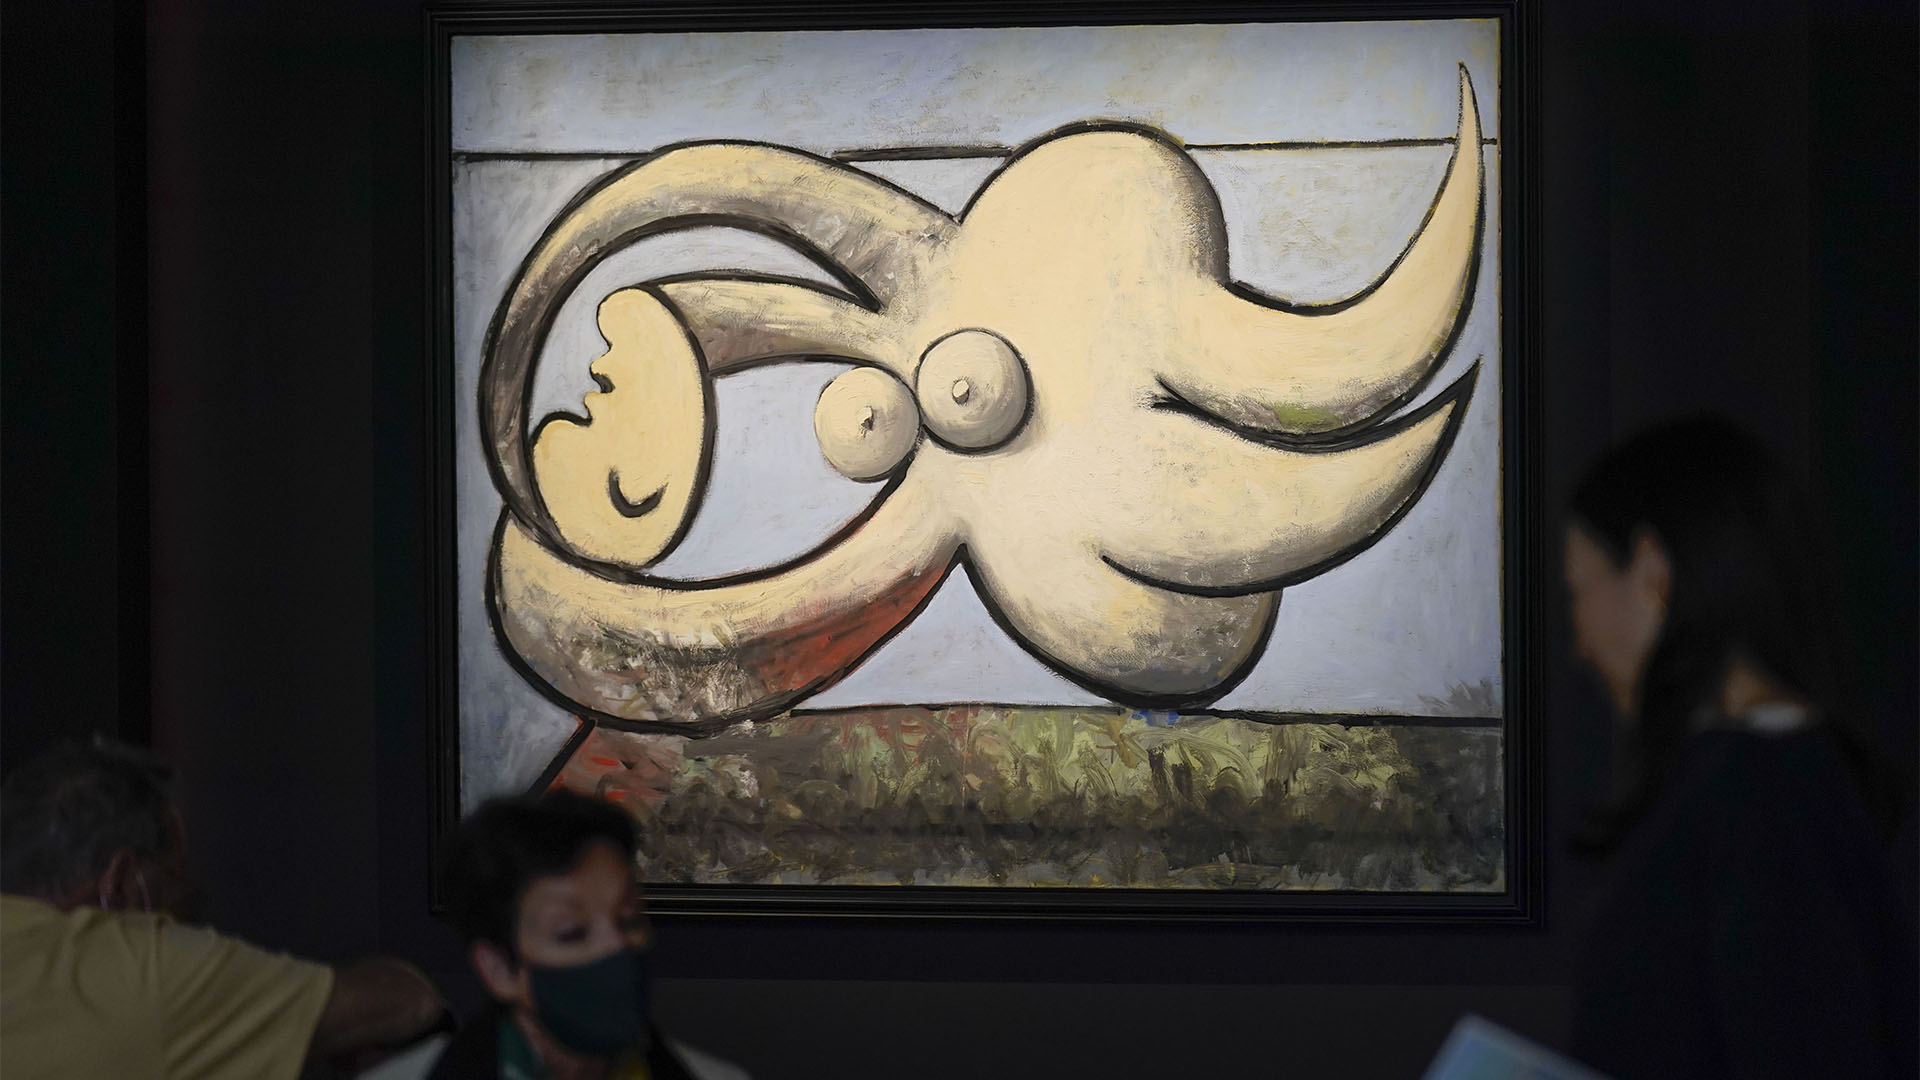 Una obra de Pablo Picasso titulada "Femme nue couchée" se exhibe en Sotheby's en Nueva York. (Foto AP/Seth Wenig )